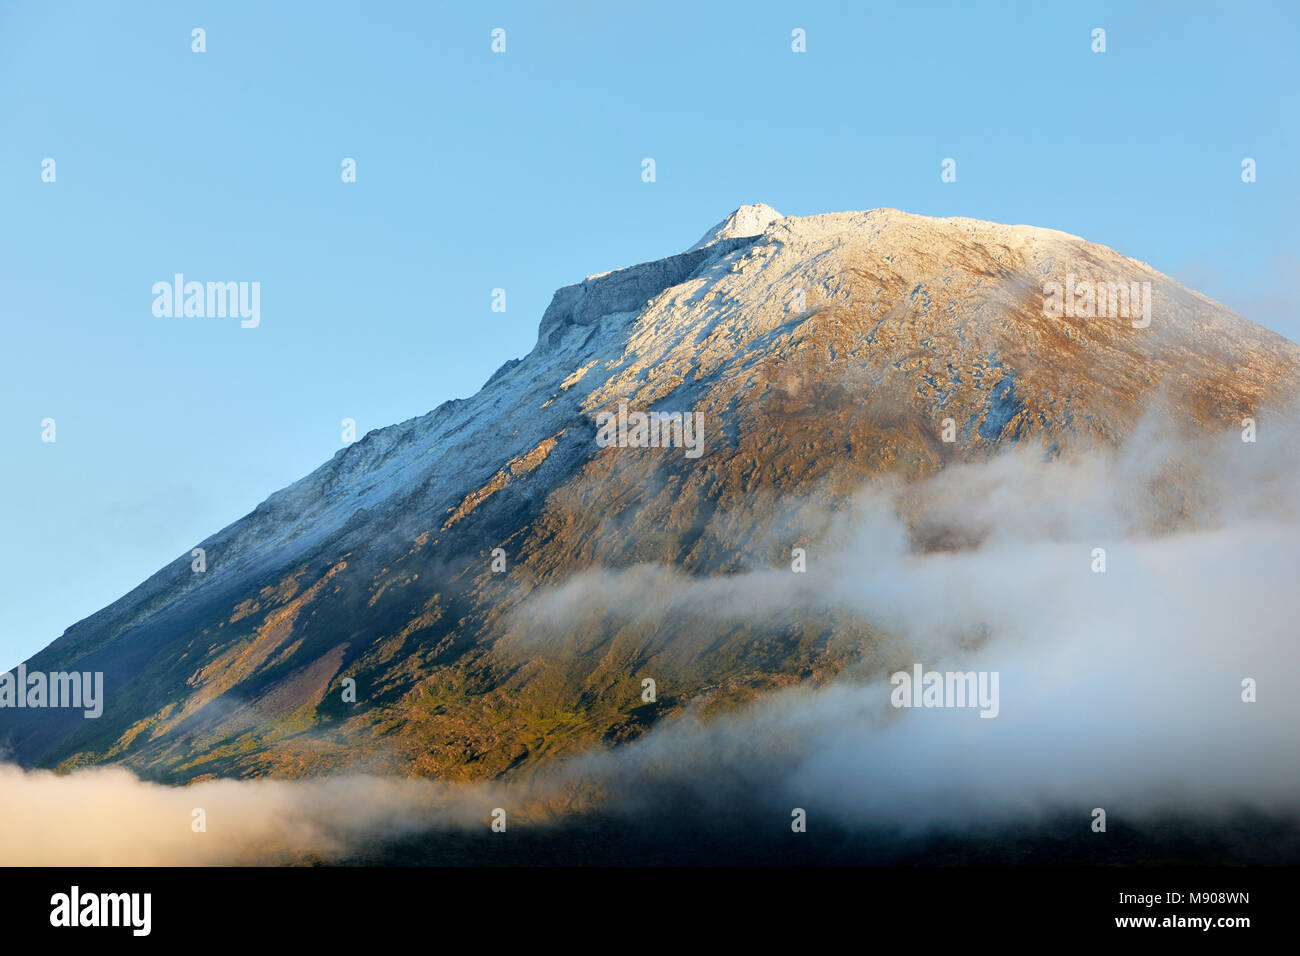 Le volcan recouvert de neige, 2351 mètres de haut, à l'île de Pico. Sa dernière éruption a été en 1720. Açores, Portugal Banque D'Images